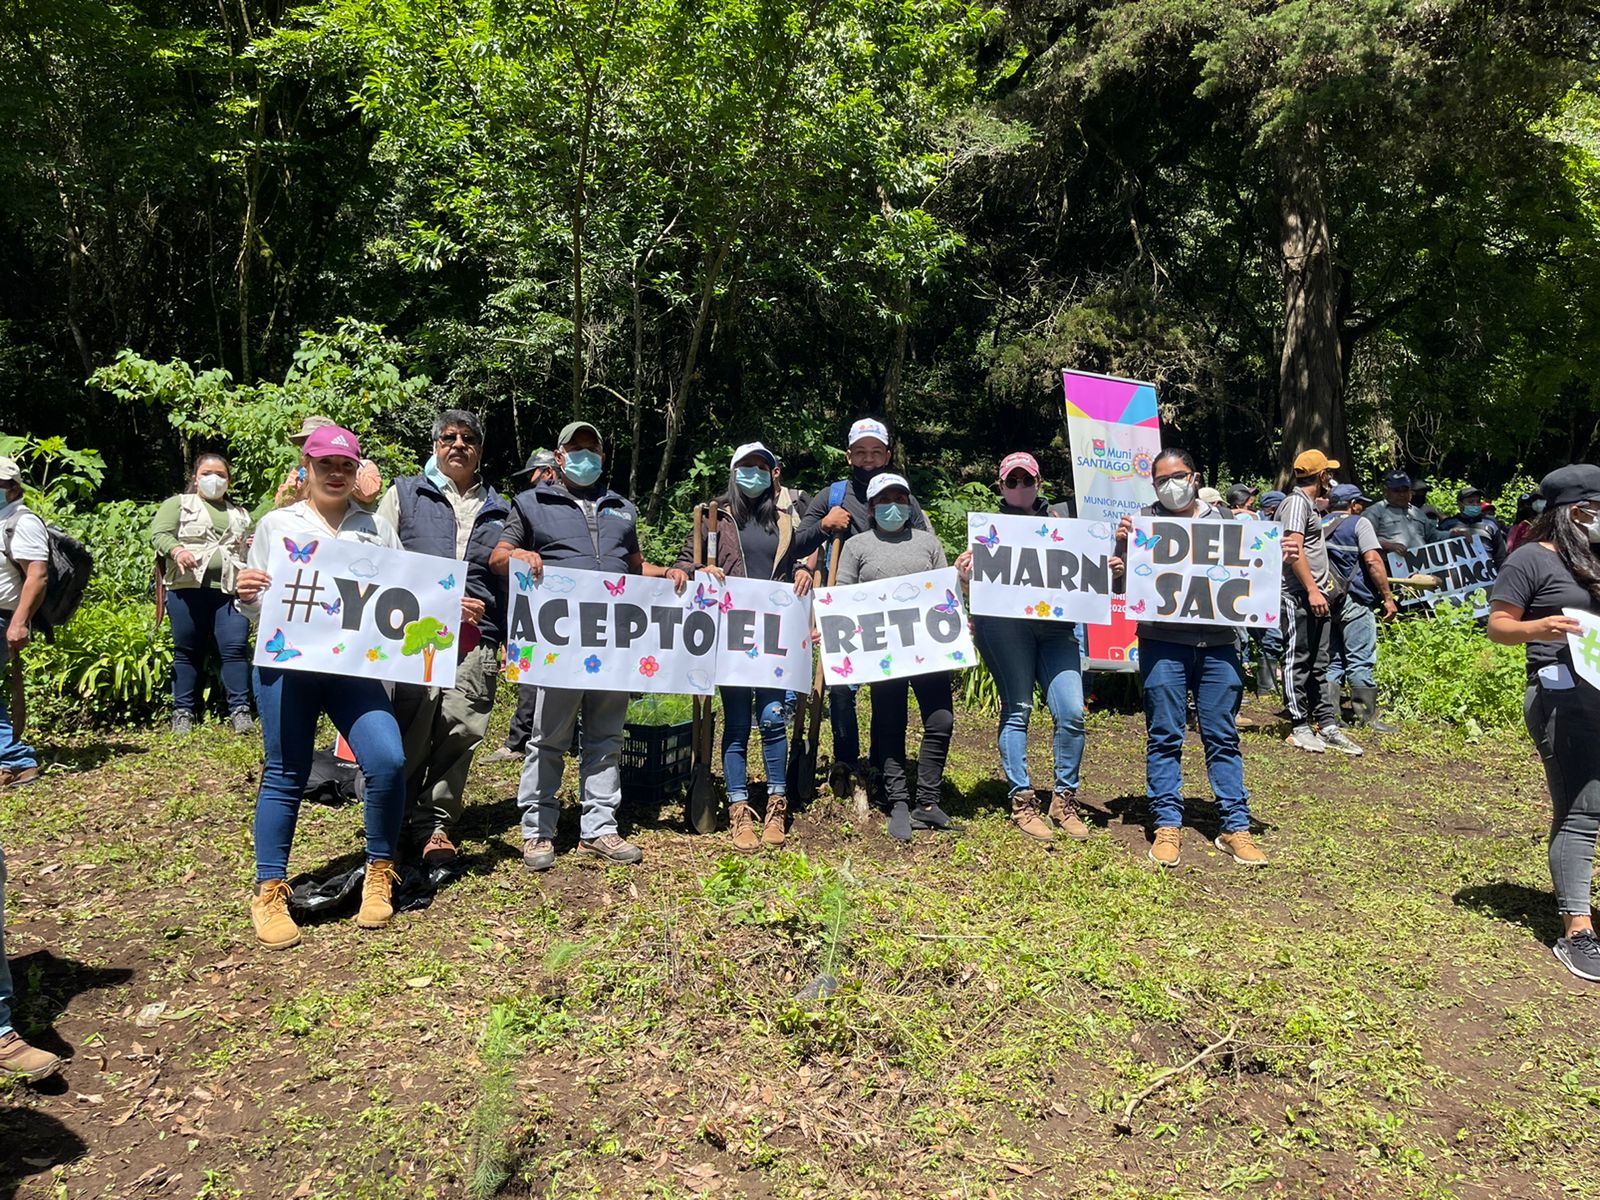 Reciclaje y reforestación forman parte del #RetoMARN en Sacatepéquez